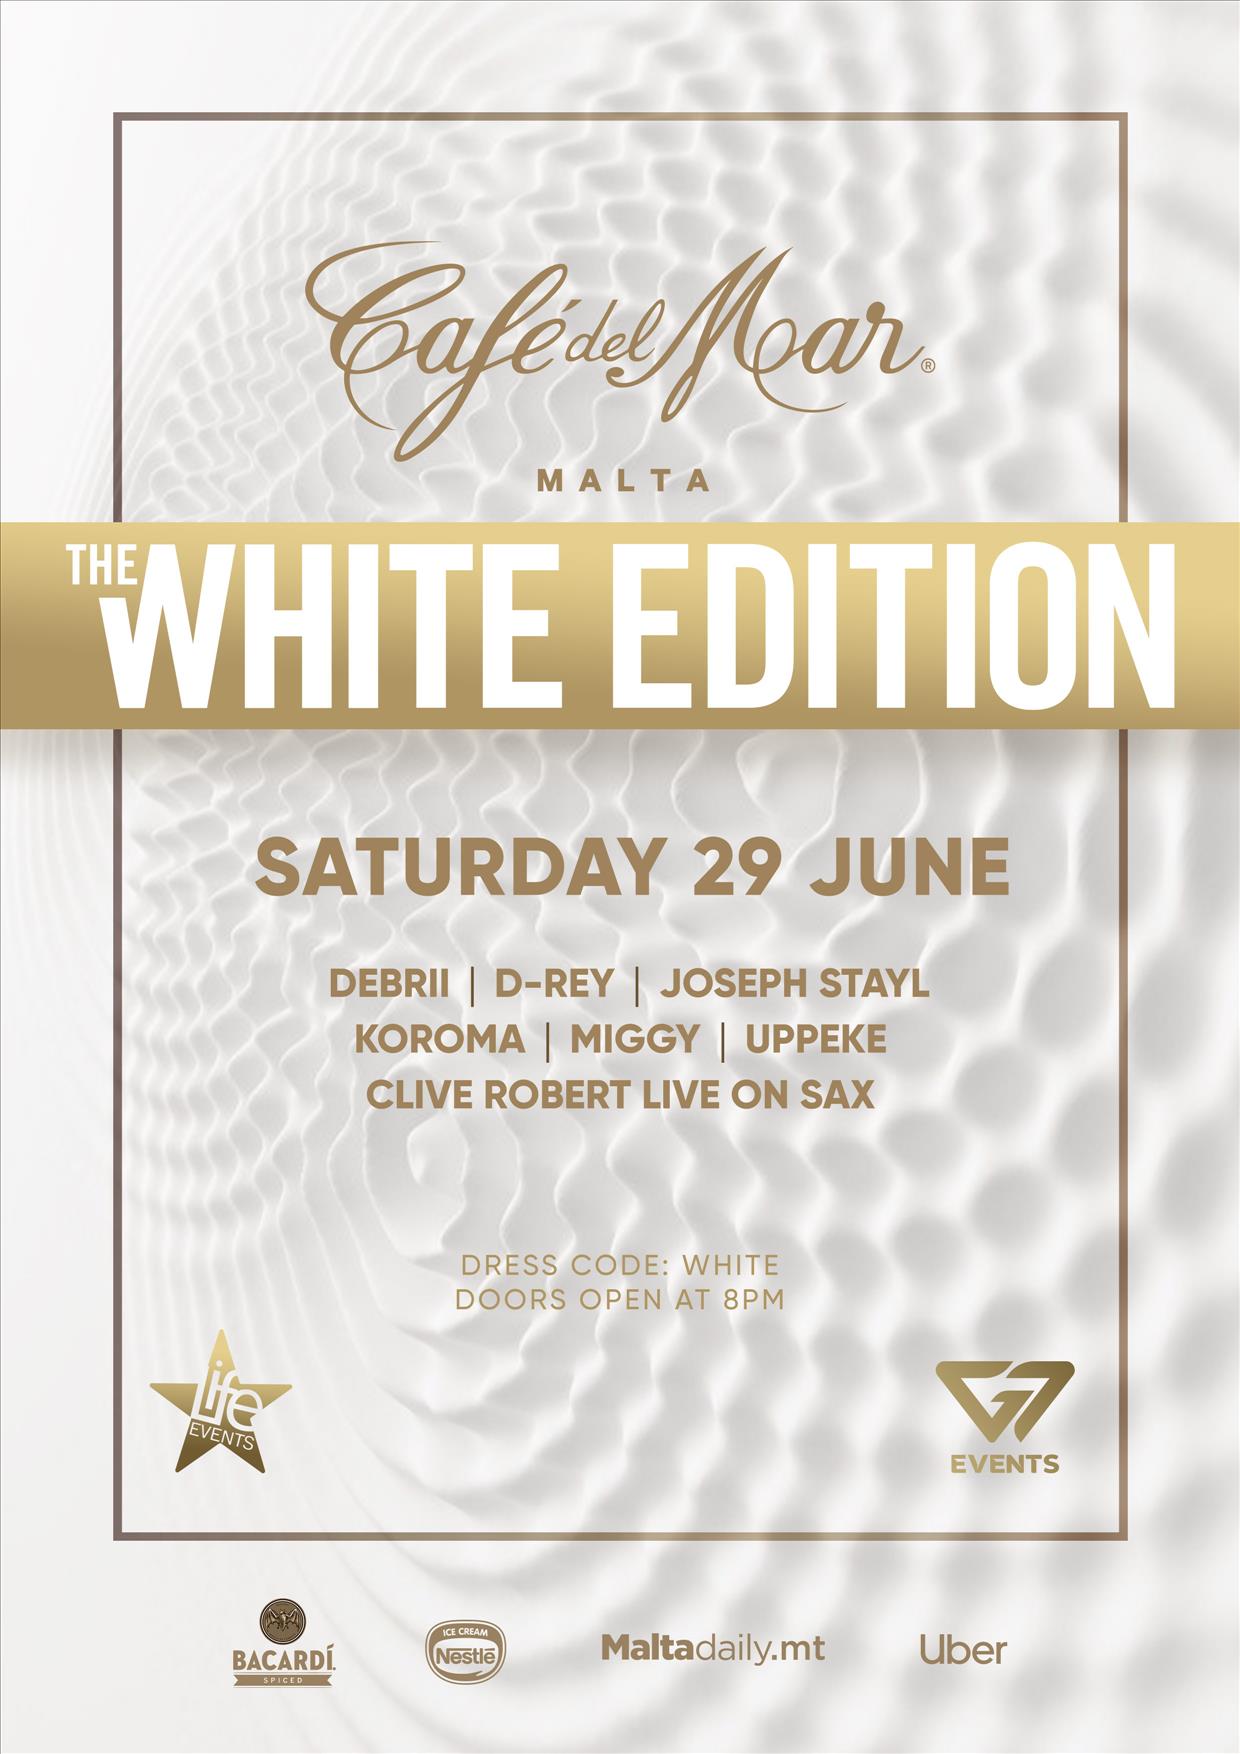 The Café del Mar White Edition